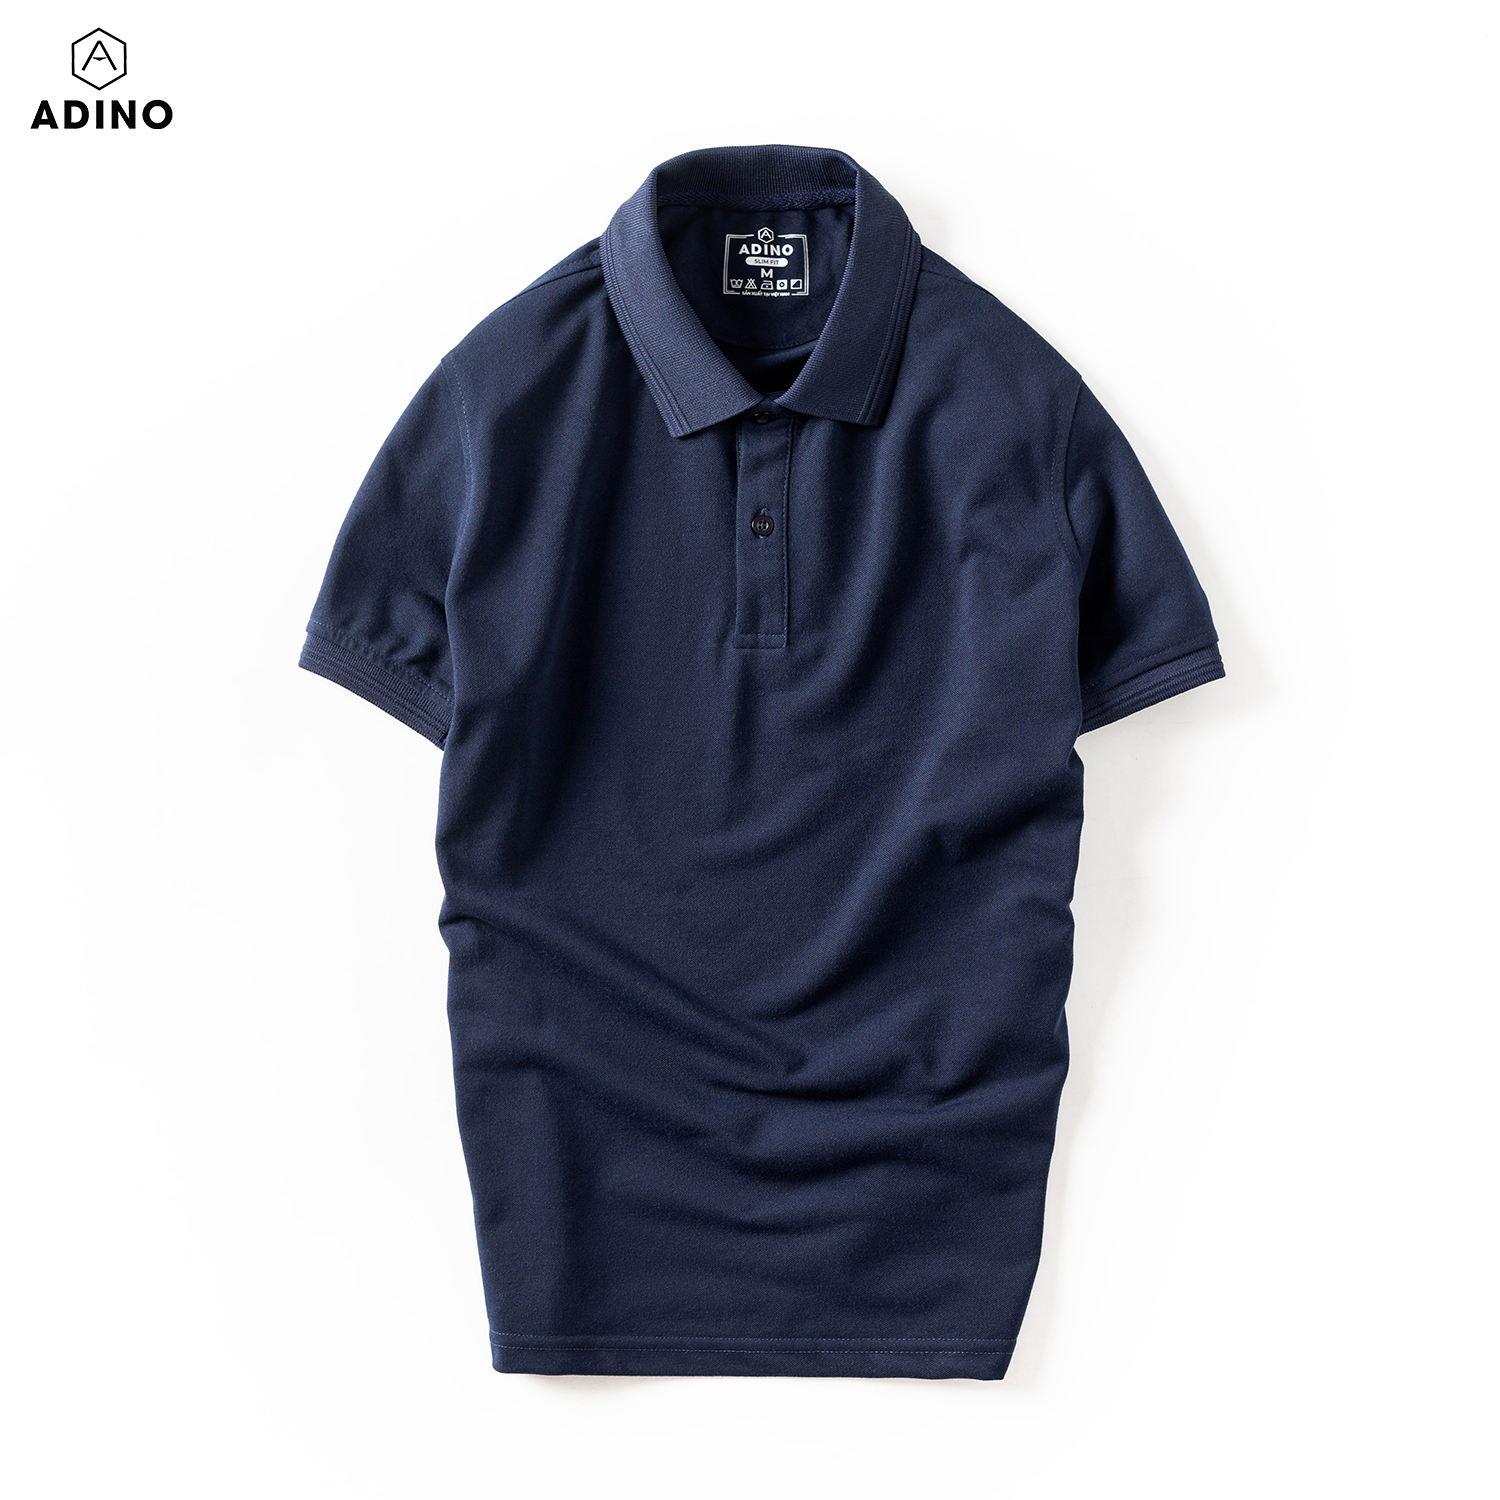 Áo thun có cổ nam màu xanh đen phối viền chìm ADINO vải cotton polyester mềm dáng slimfit công sở trẻ trung AP86